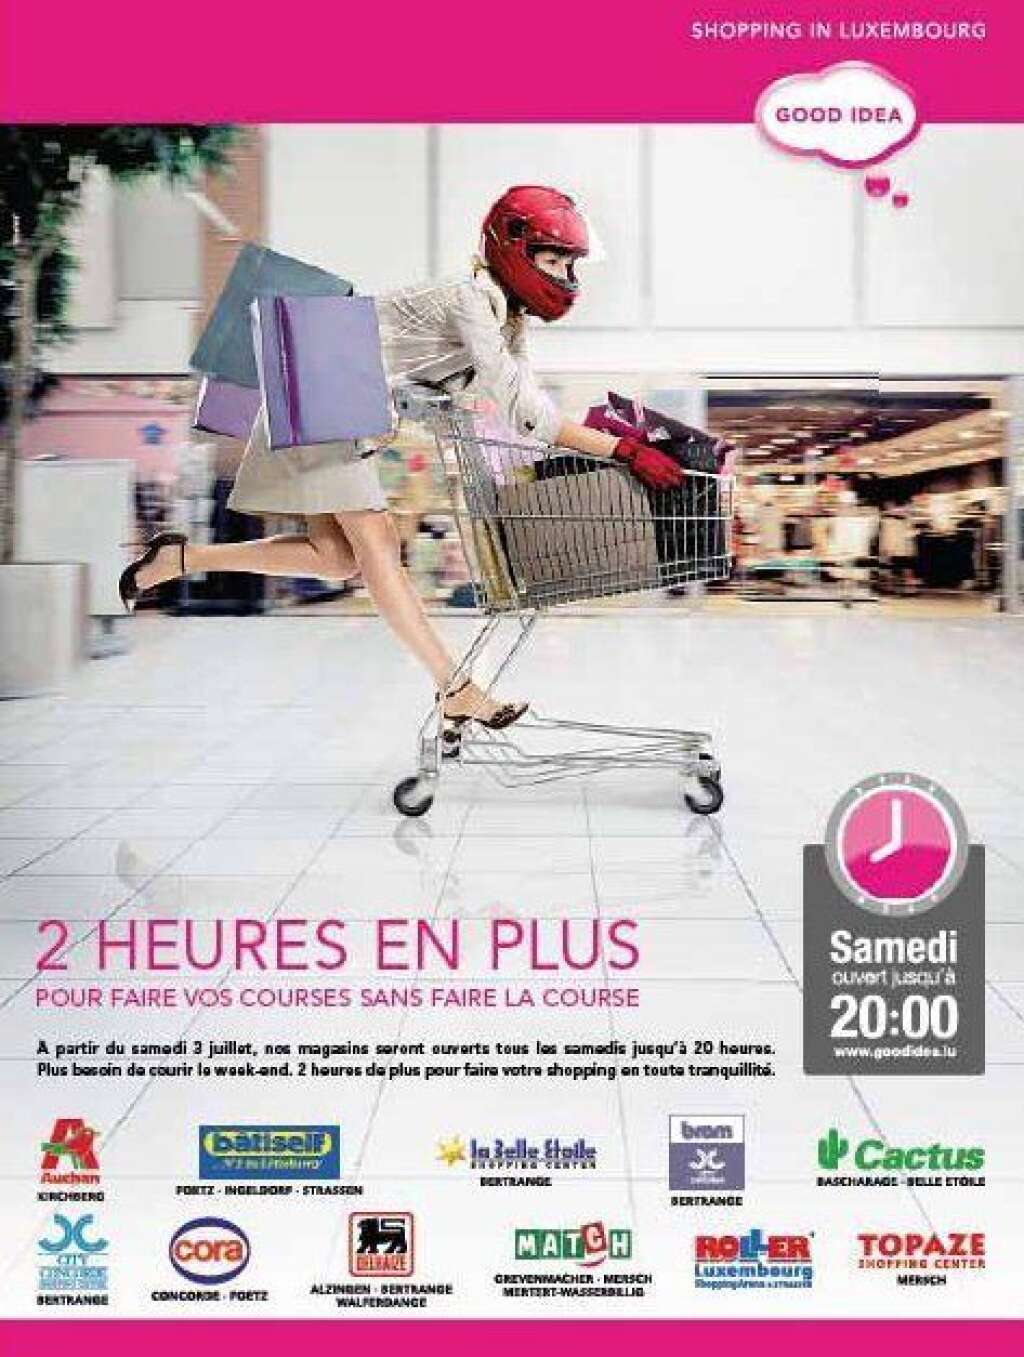 Sopping in Luxembourg - Le shopping, bien sûr, c'est pour les femmes...